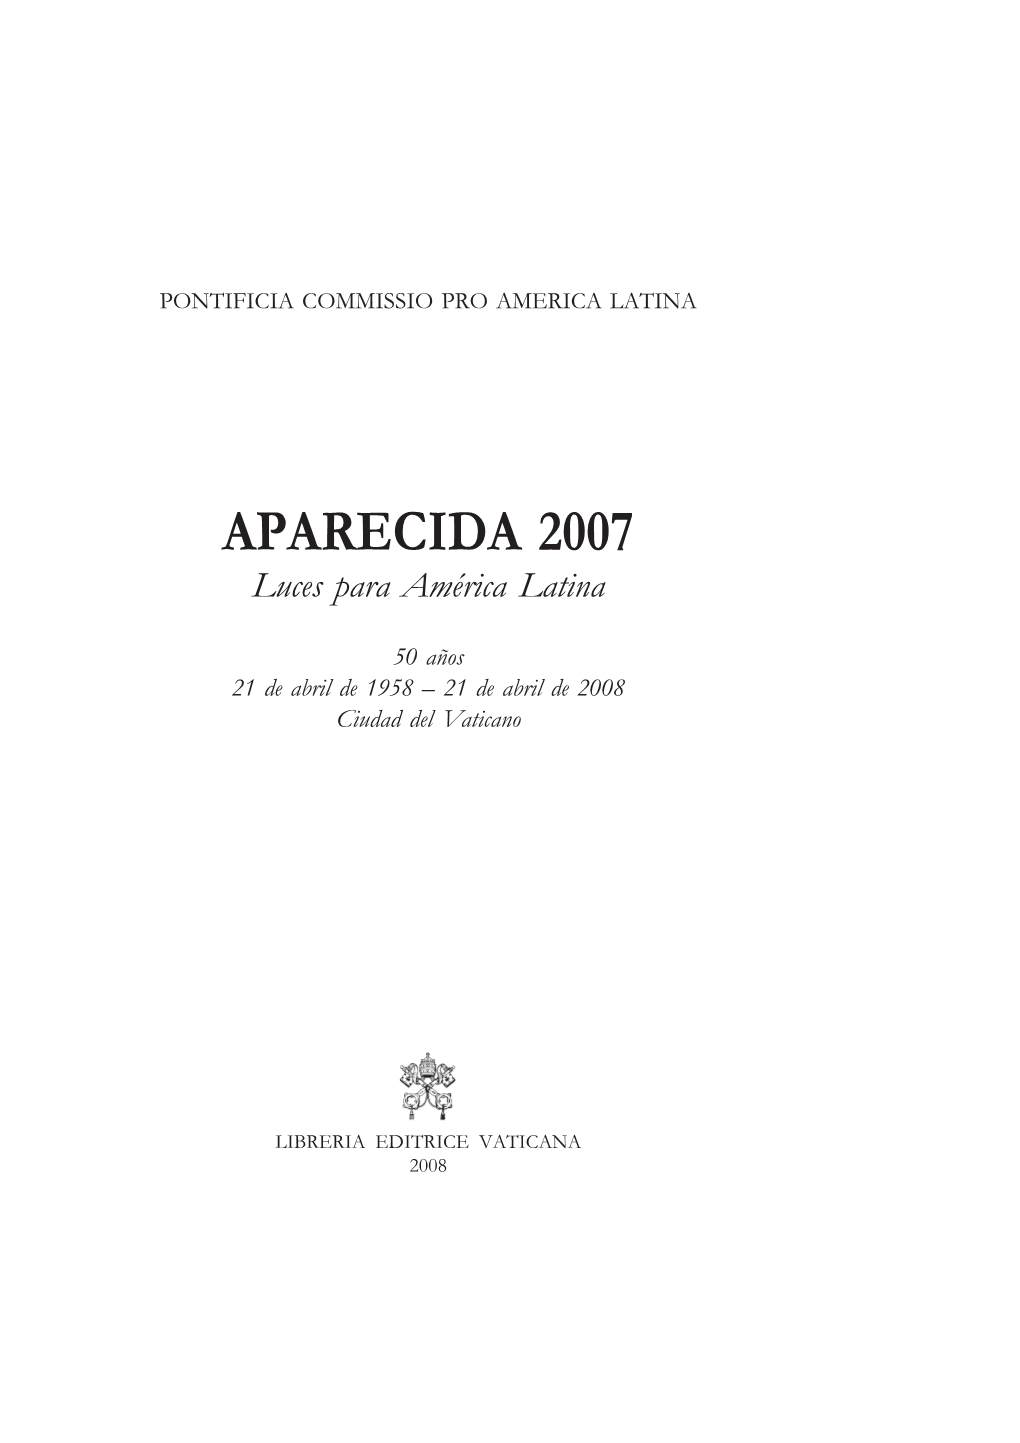 APARECIDA 2007 Luces Para Ame´Rica Latina